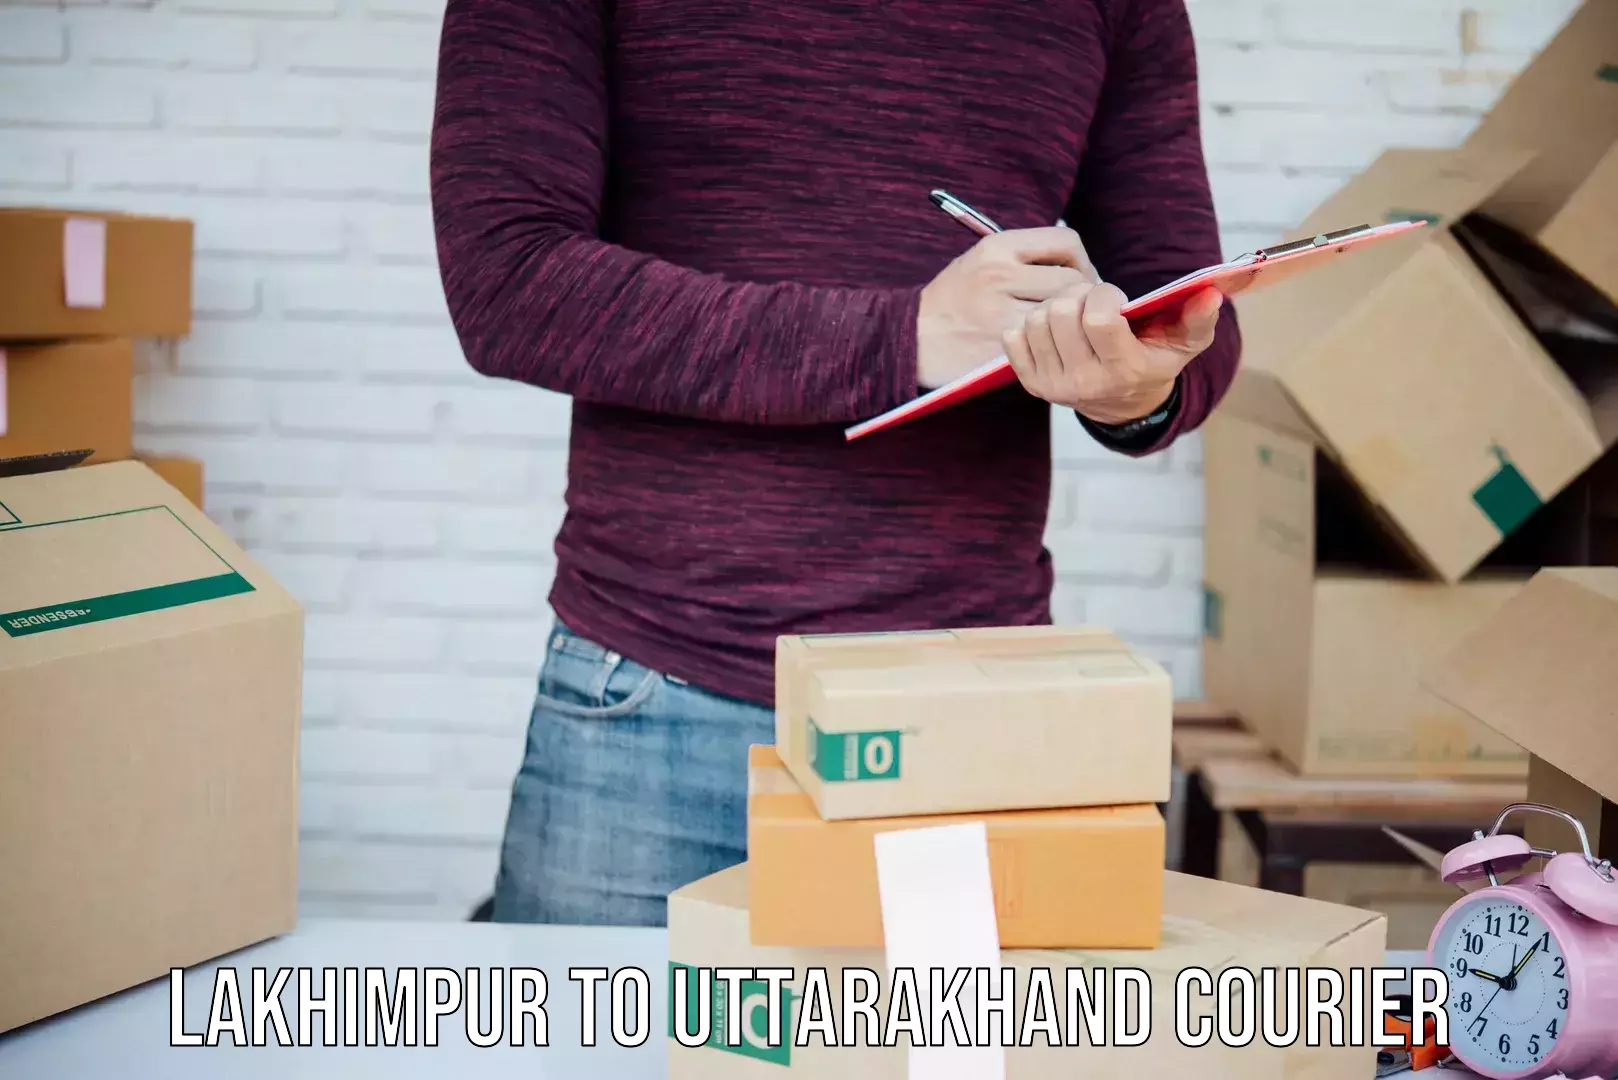 Courier service innovation Lakhimpur to Uttarakhand